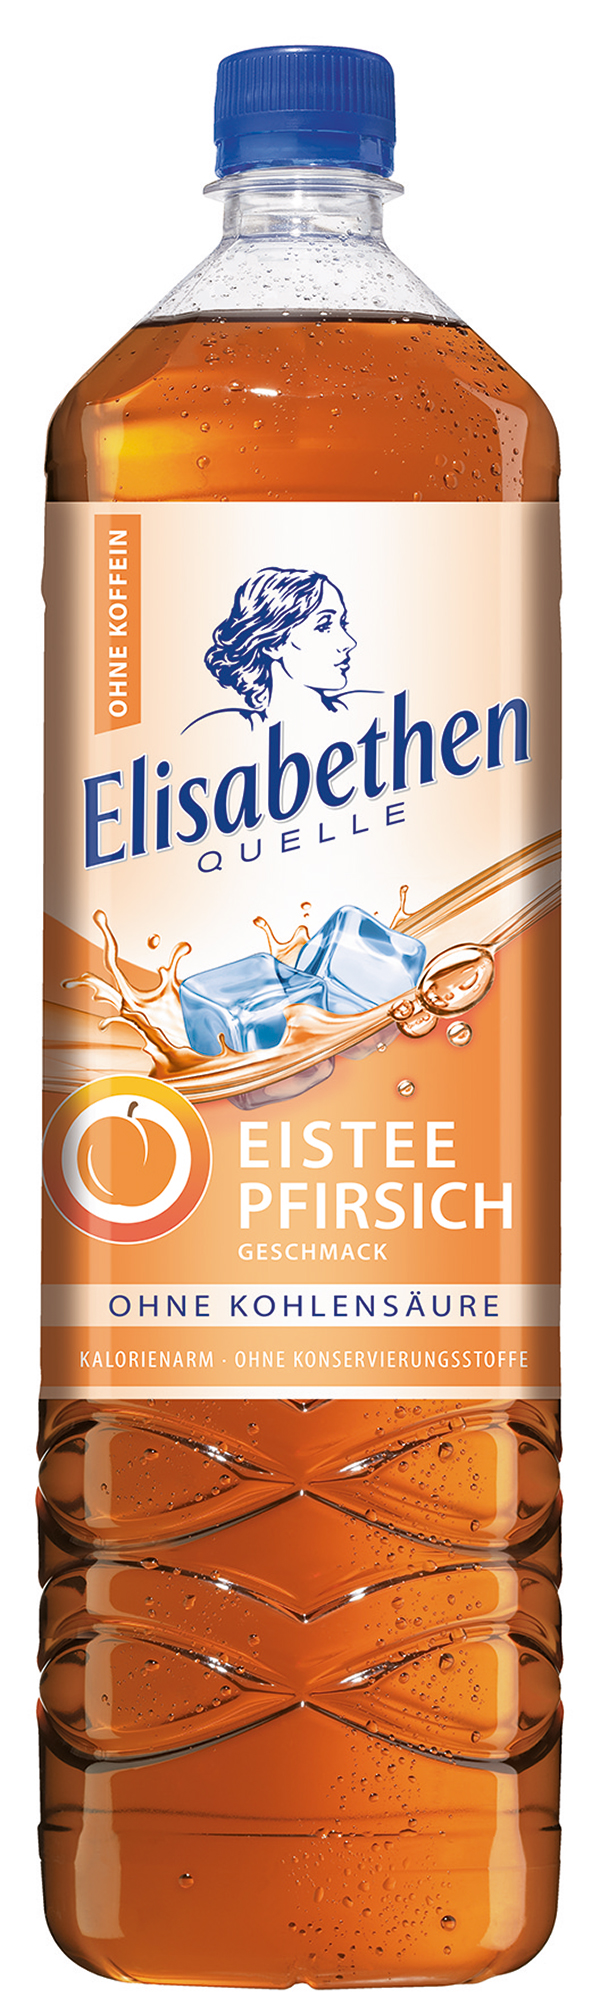 Elisabethen Quelle Eistee Pfirsich  6 x 1,5 l (PET)